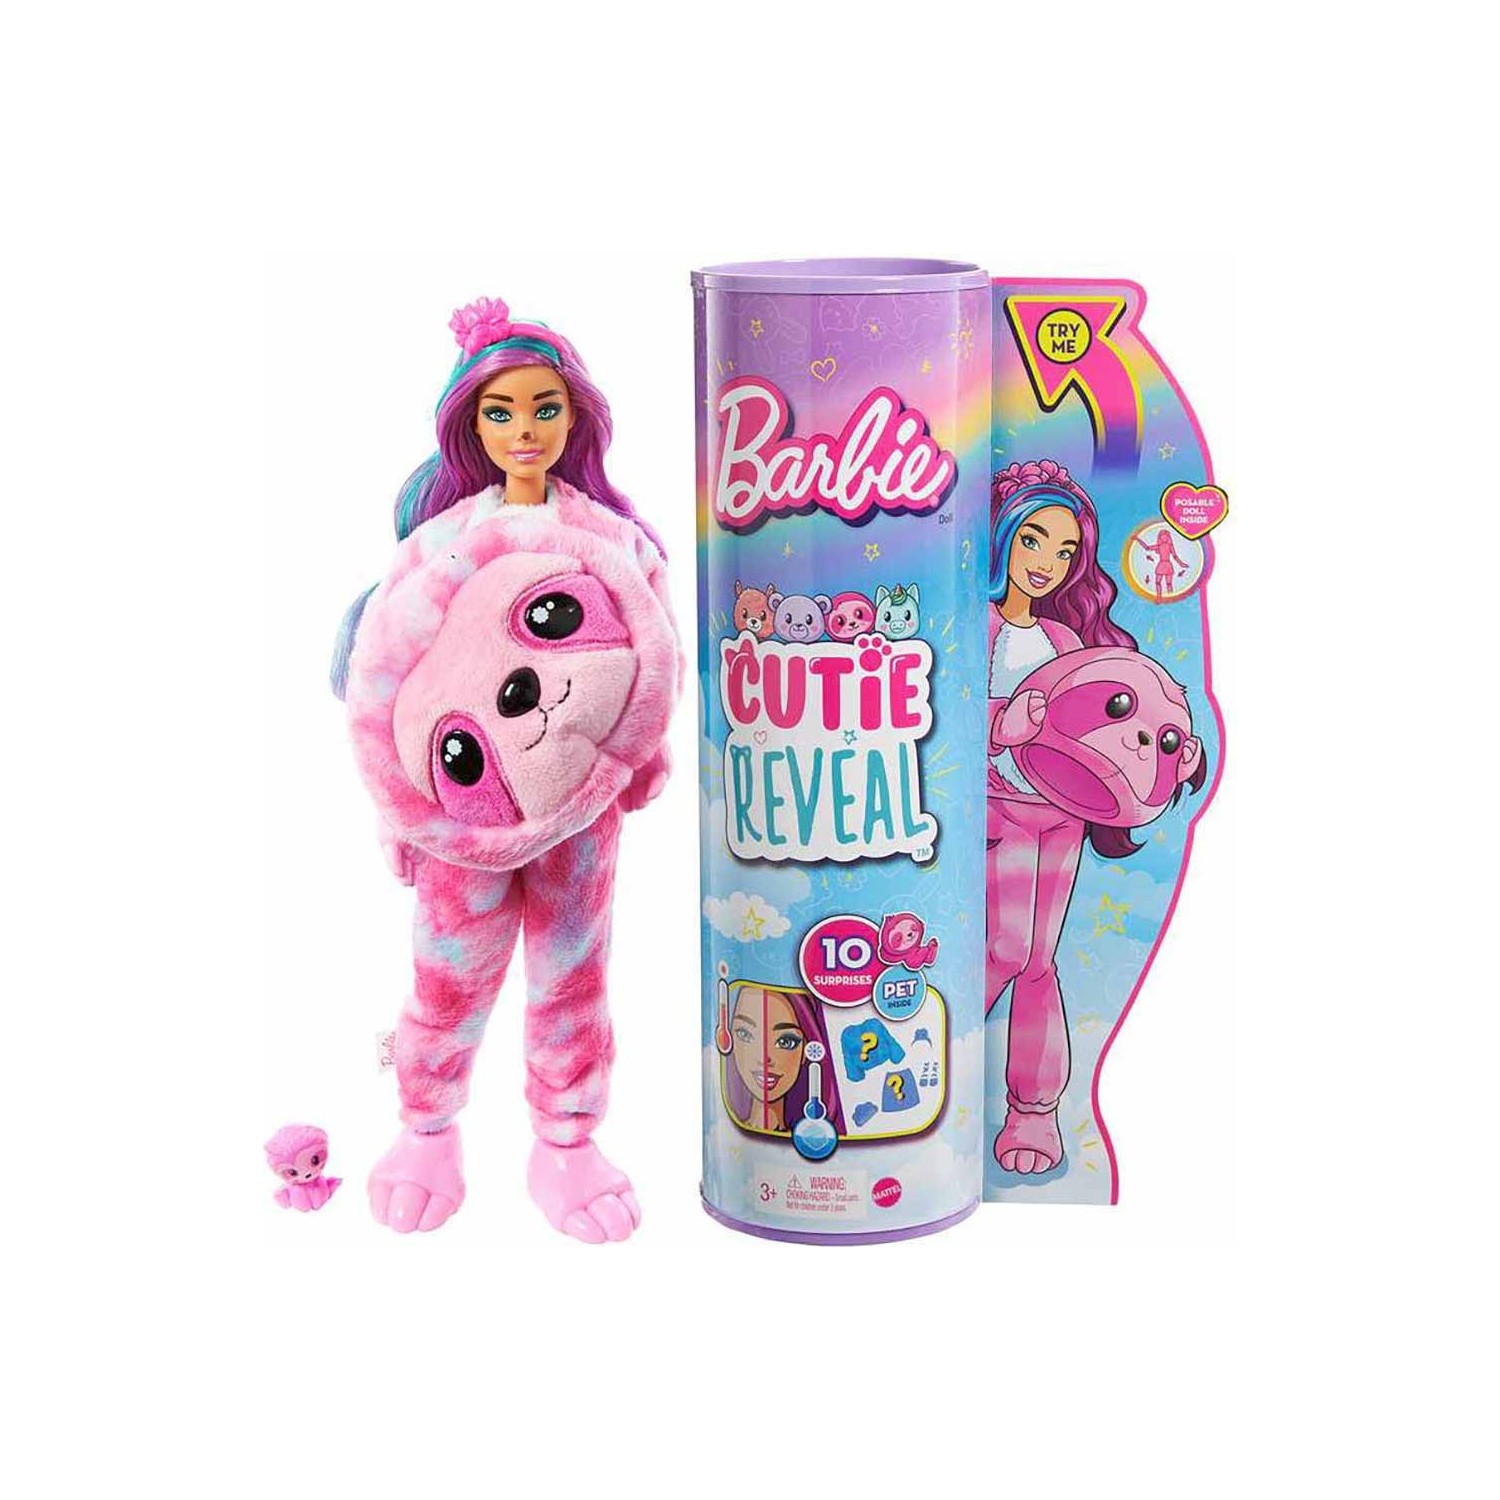 Кукла Barbie Cutie Reveal цветочный ленивец HJL56 цветущий подарочный комплект